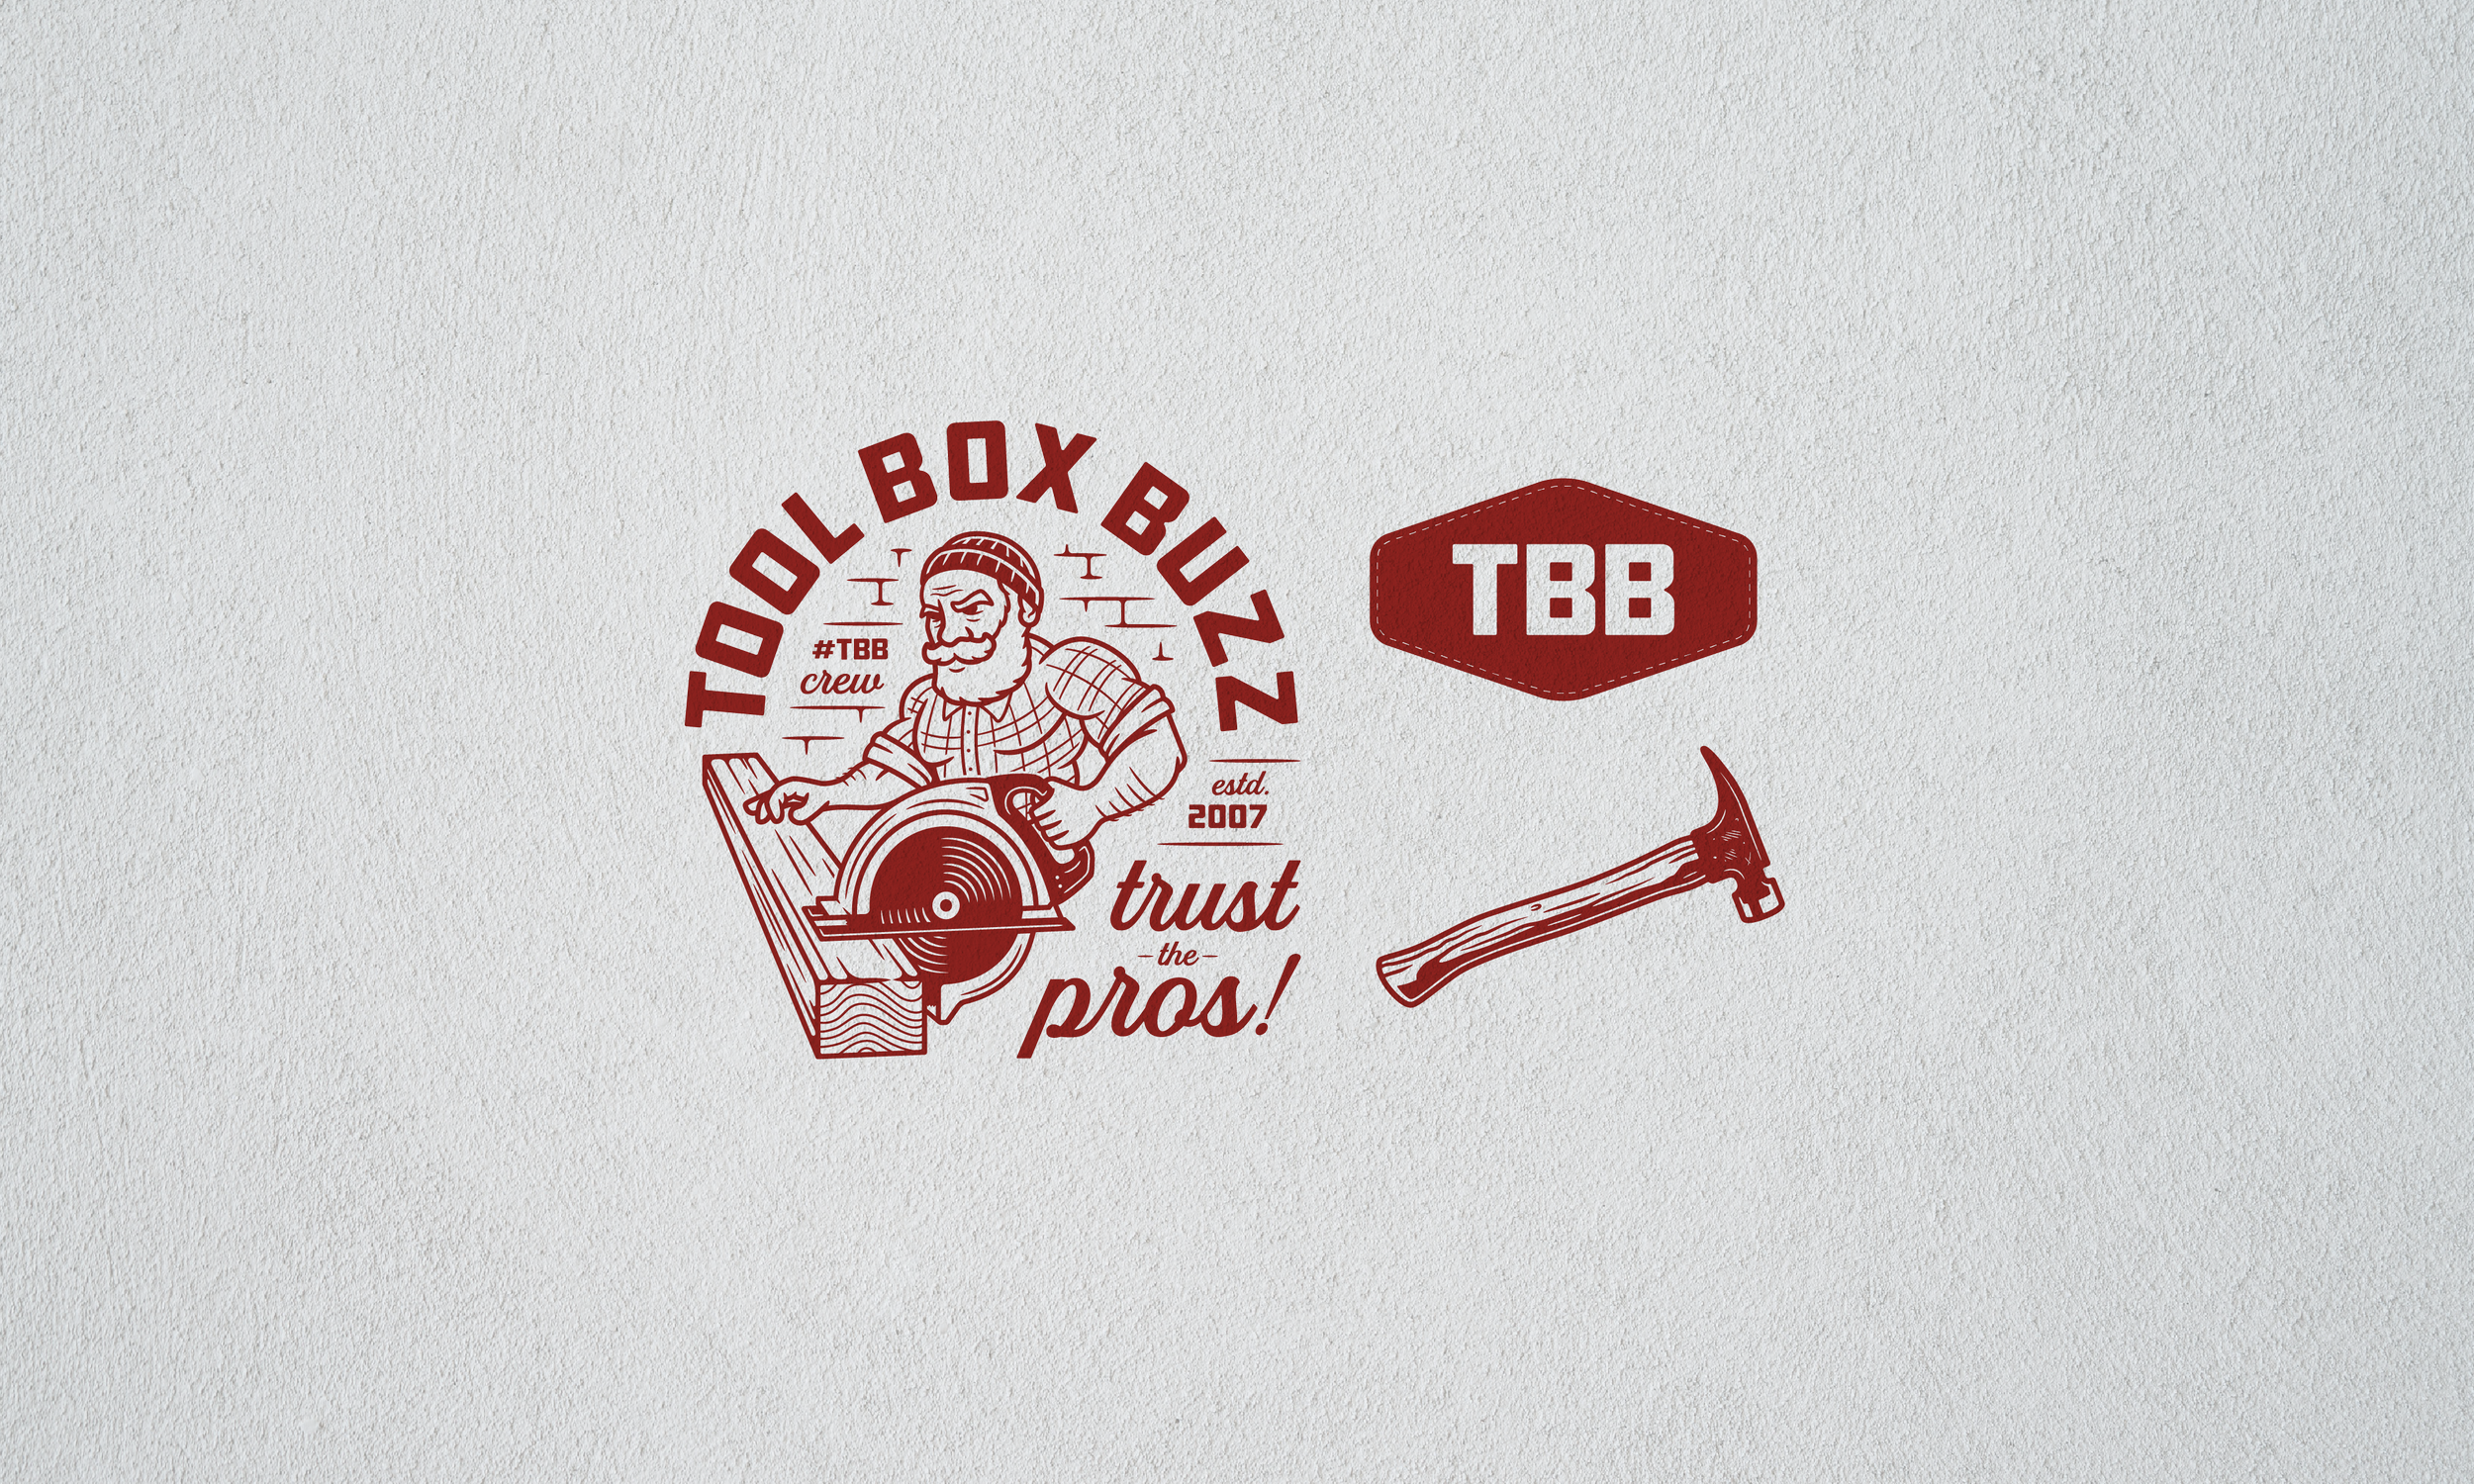 Tool Box Buzz — Steve Cardi